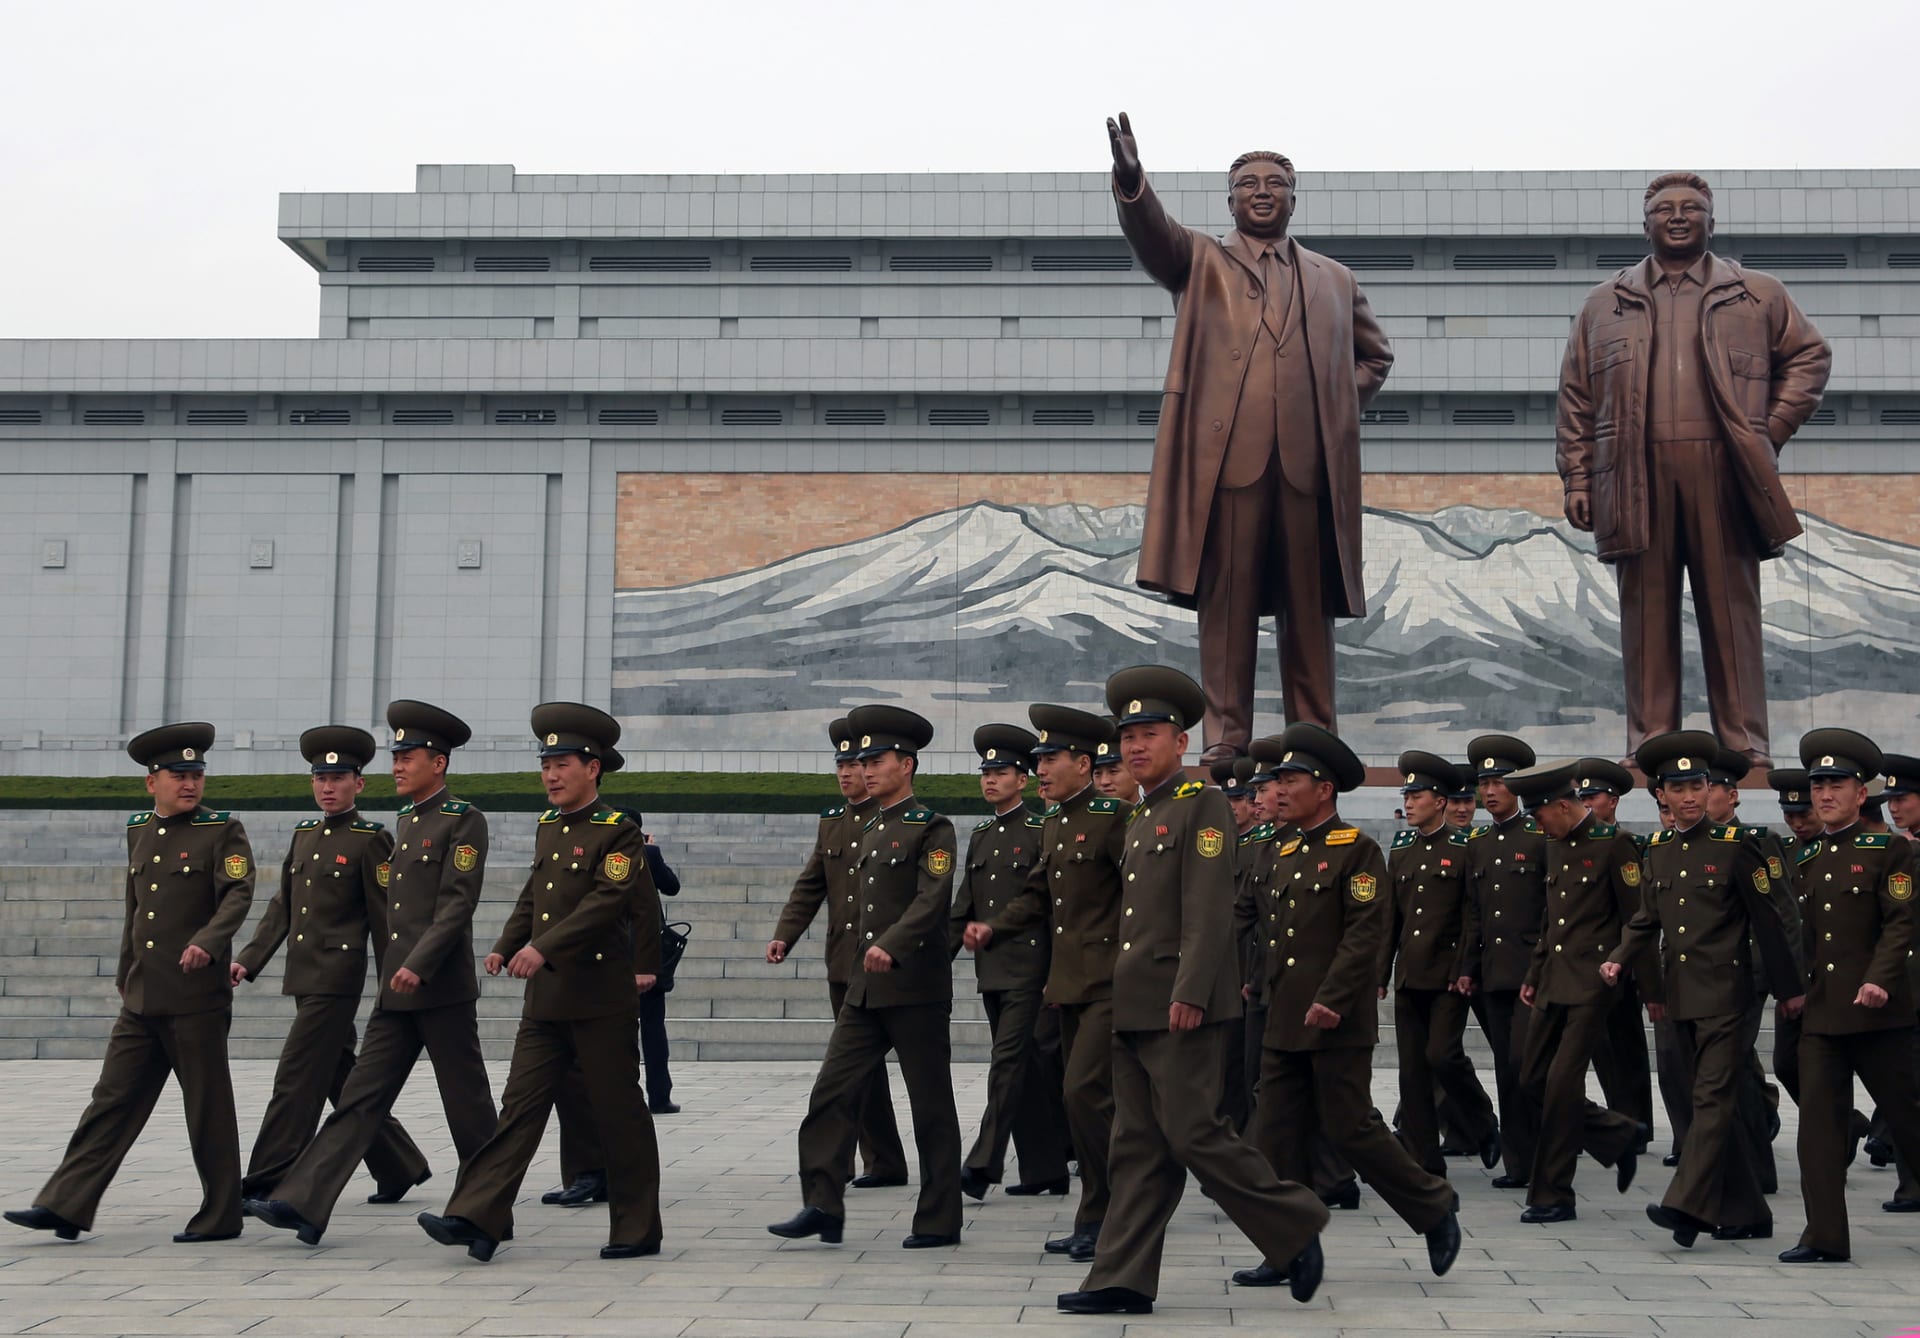 Vojáci u památníku dynastie Kimů – vlevo socha Kim Ir-sena